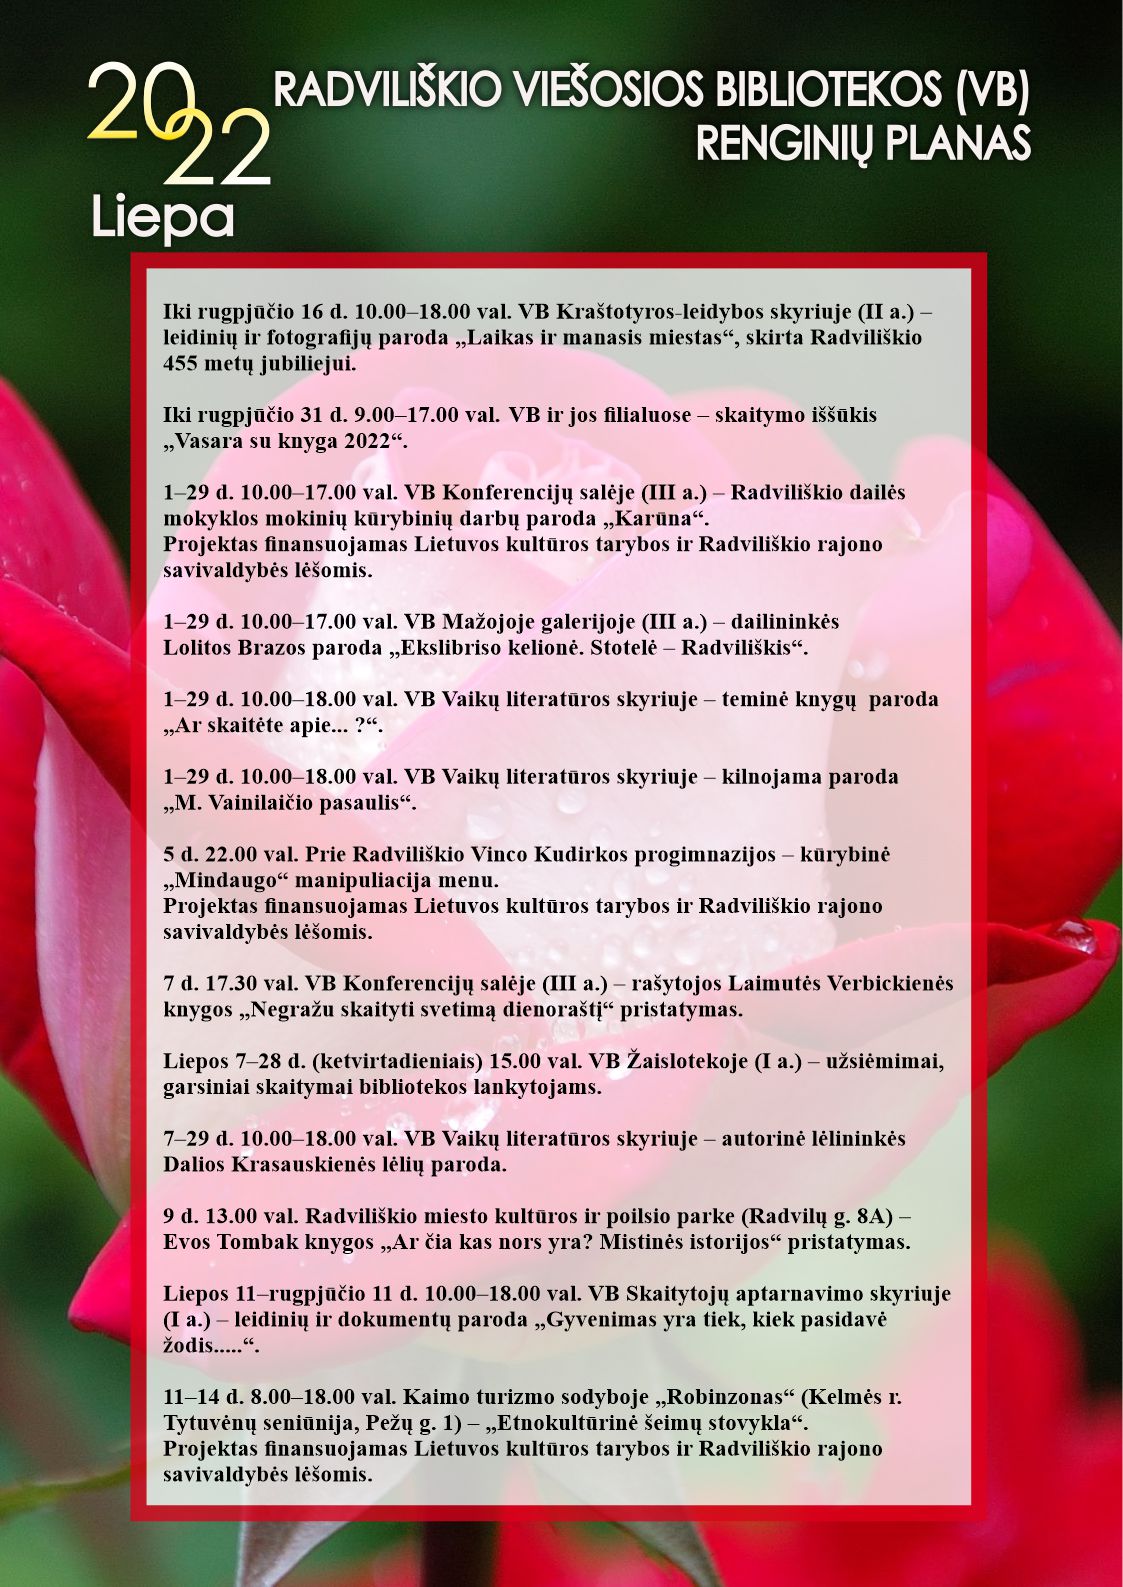 Radviliškio viešosios bibliotekos liepos mėn. renginių planas